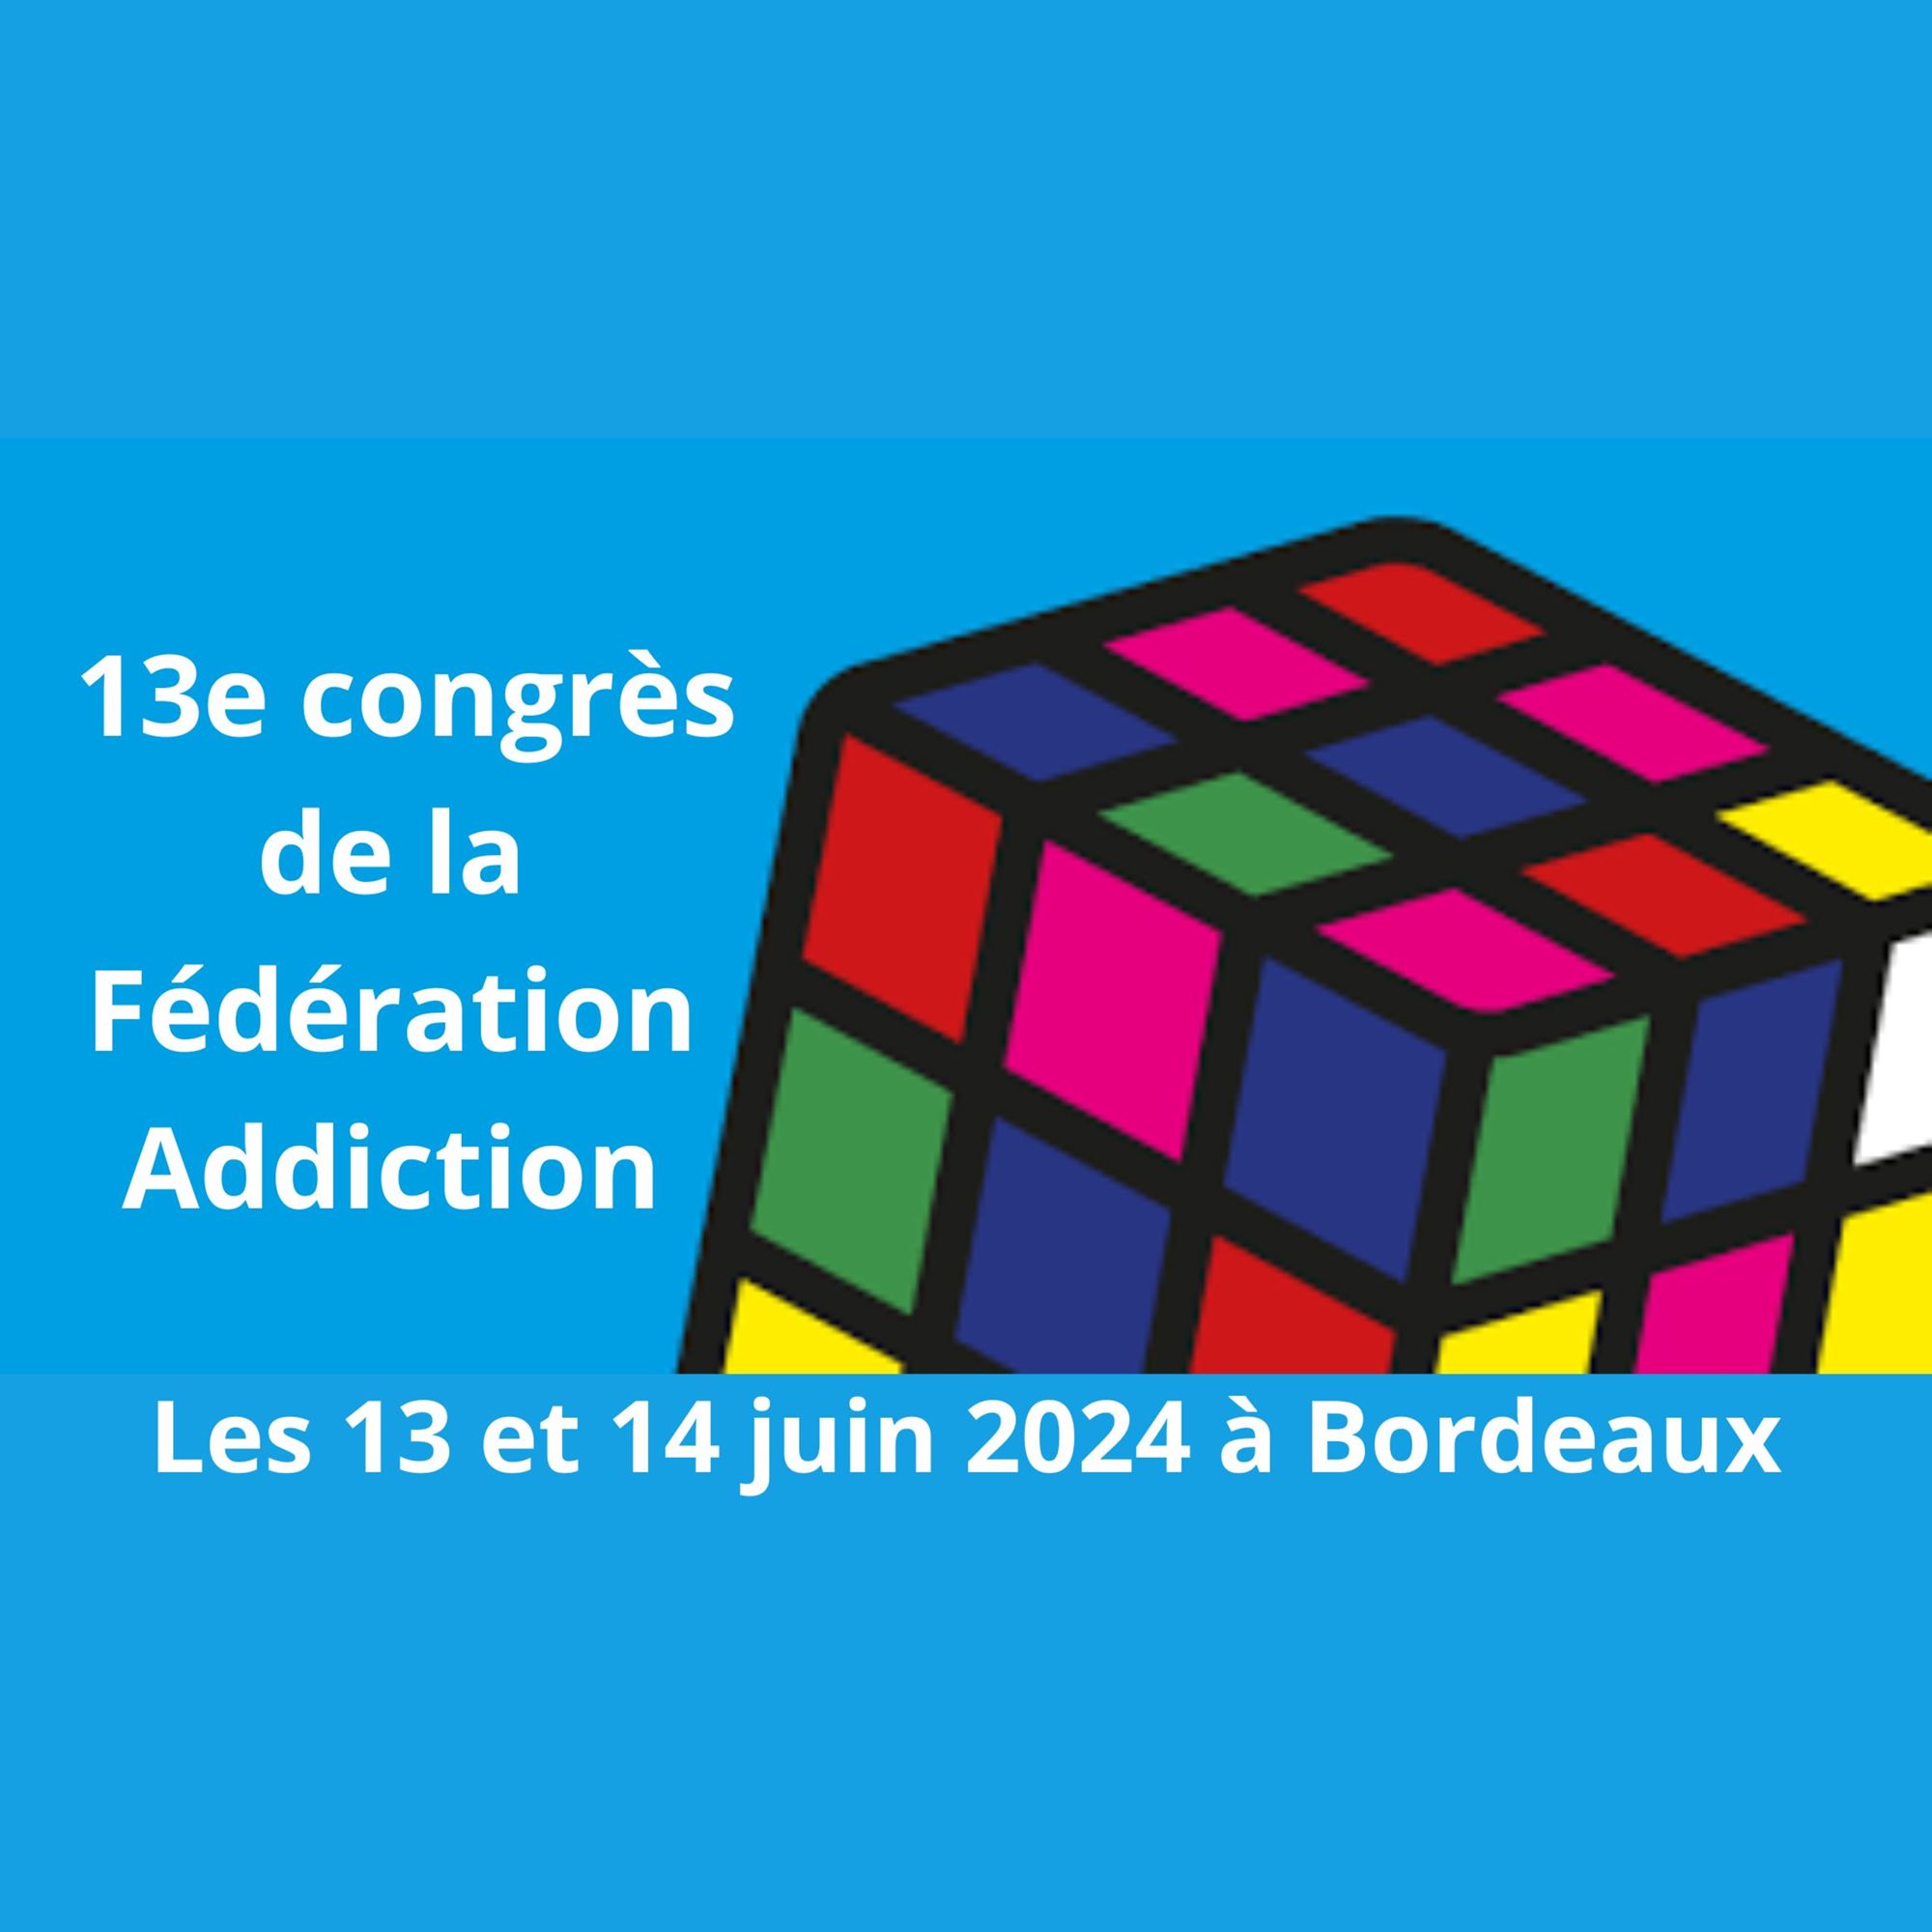 13e congrès de la Fédération Addiction